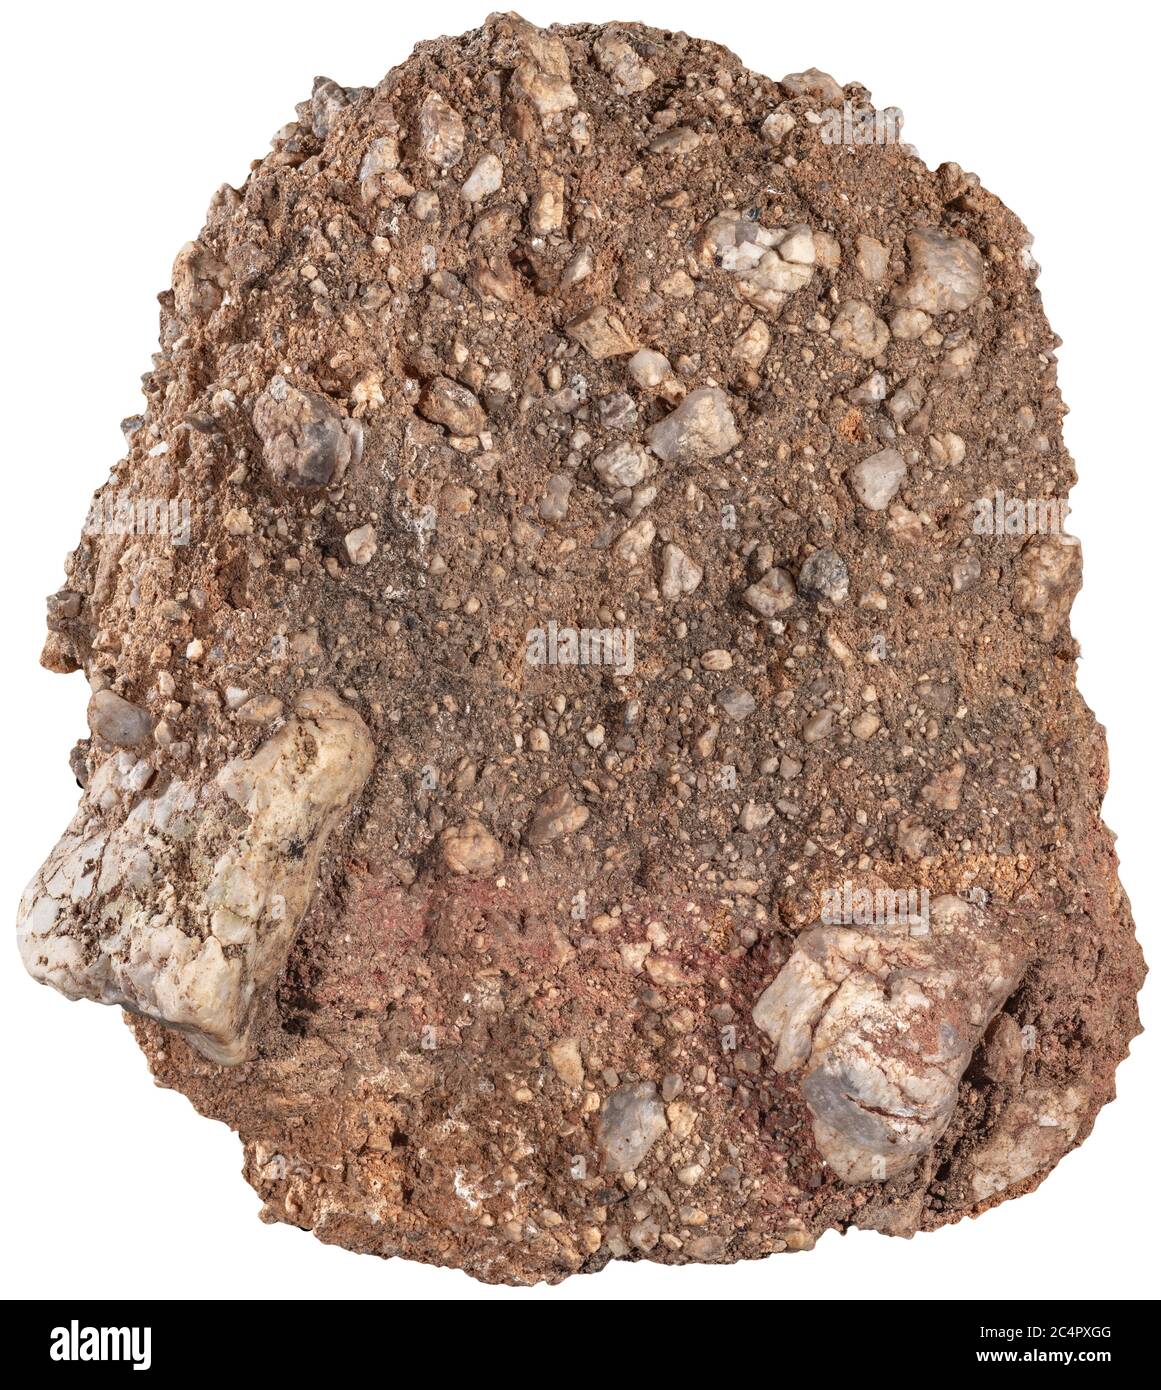 Caliche conglomerate Rock caliche è una roccia sedimentaria, un cemento naturale indurito di carbonato di calcio che lega altri materiali, come ghiaia, san Foto Stock